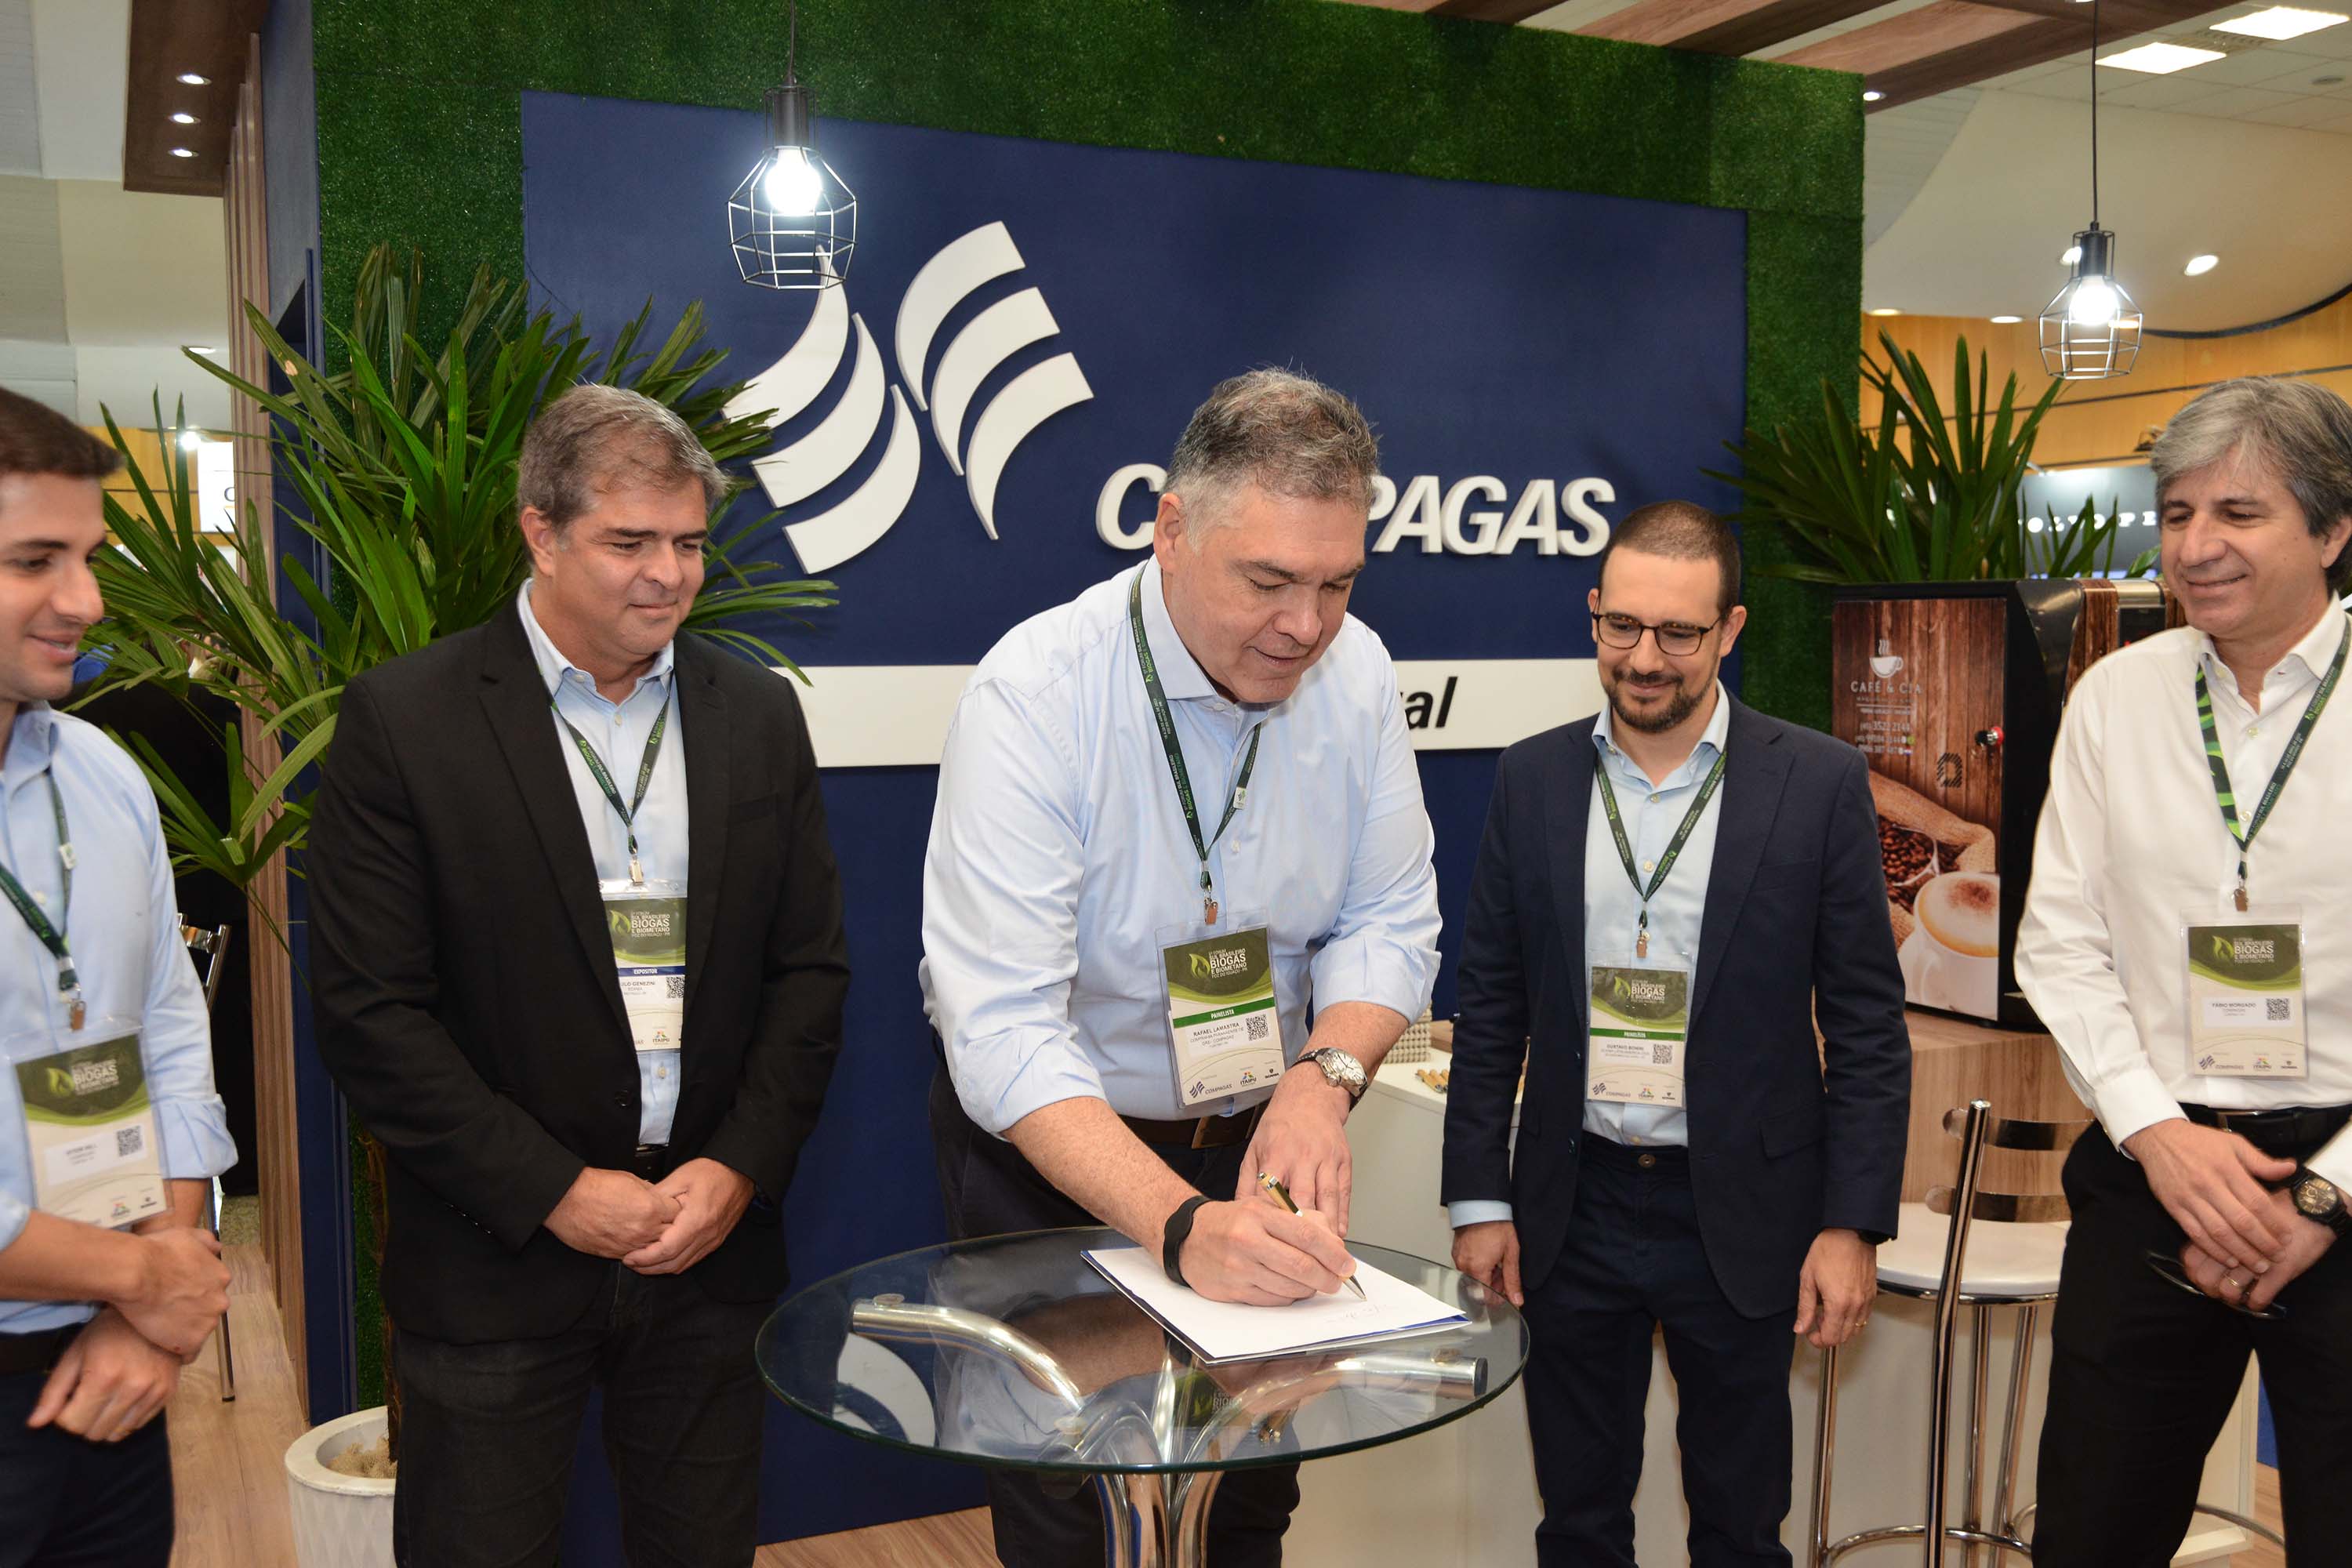 Compagas e Scania anunciam parceria para impulsionar GNV e biometano em veículos pesados - Na foto, o diretor-presidente, Rafael Lamastra Jr, o diretor técnico-comercial, Fábio Eduardo Morgado, e o di